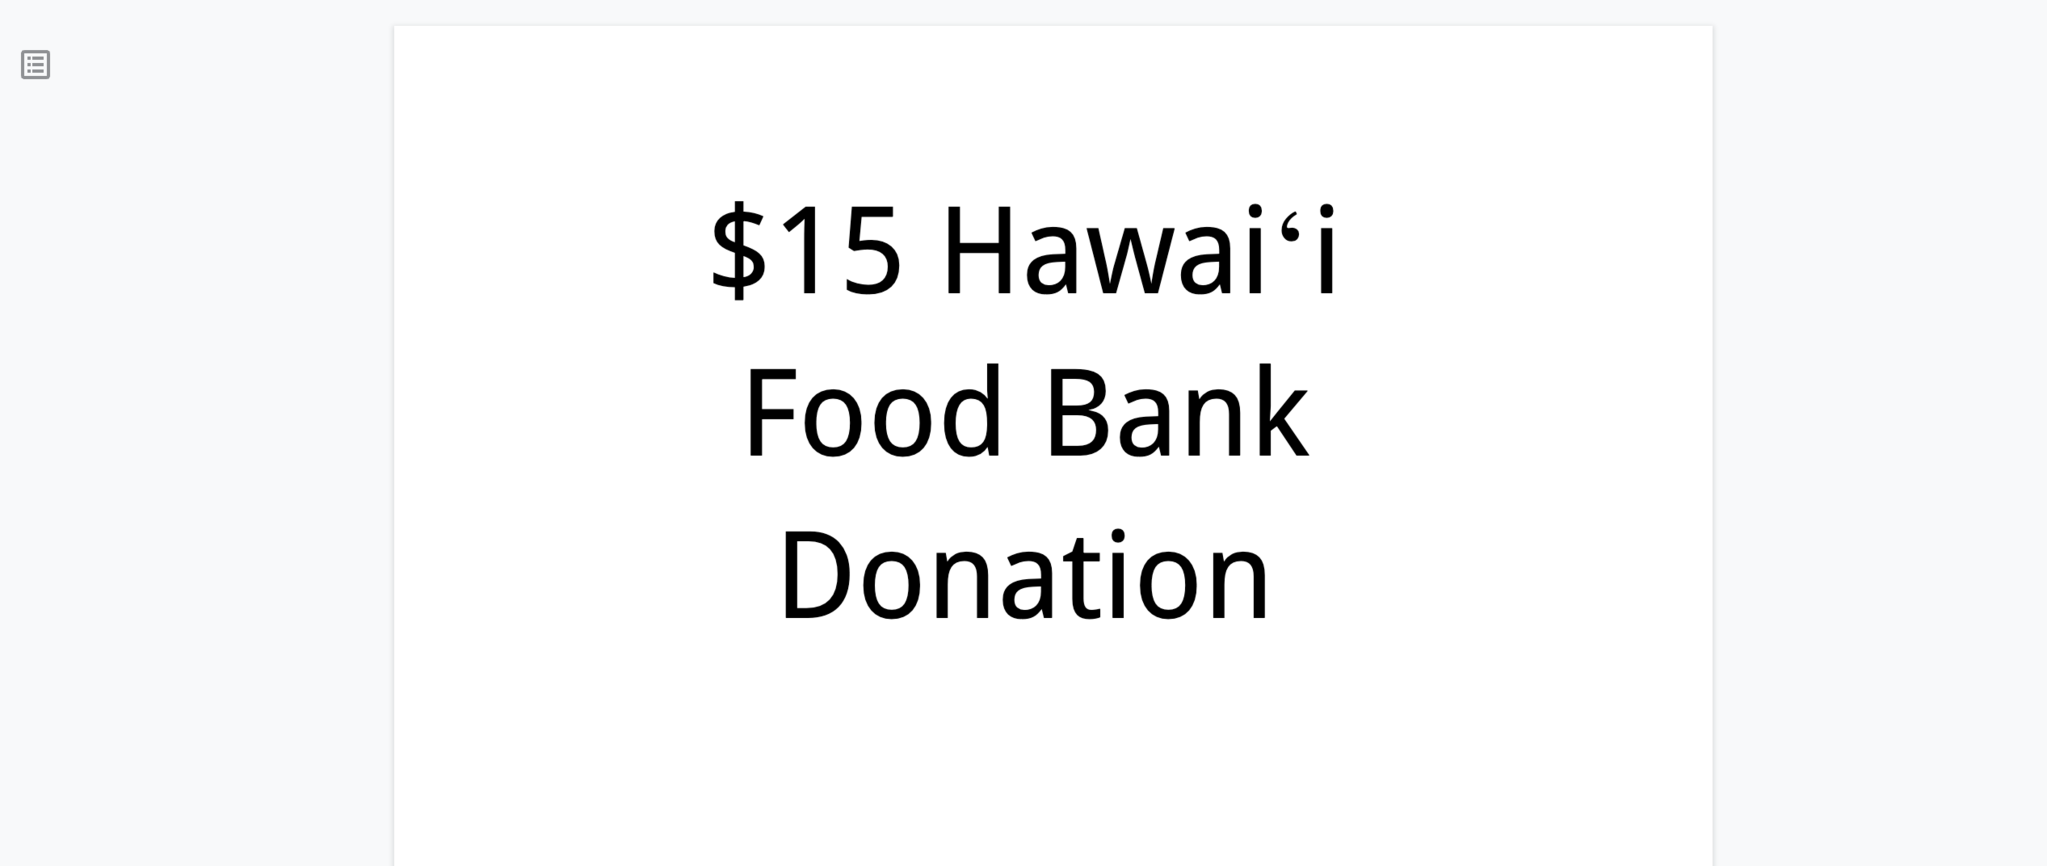 Hawaii Food Bank $15 Donation